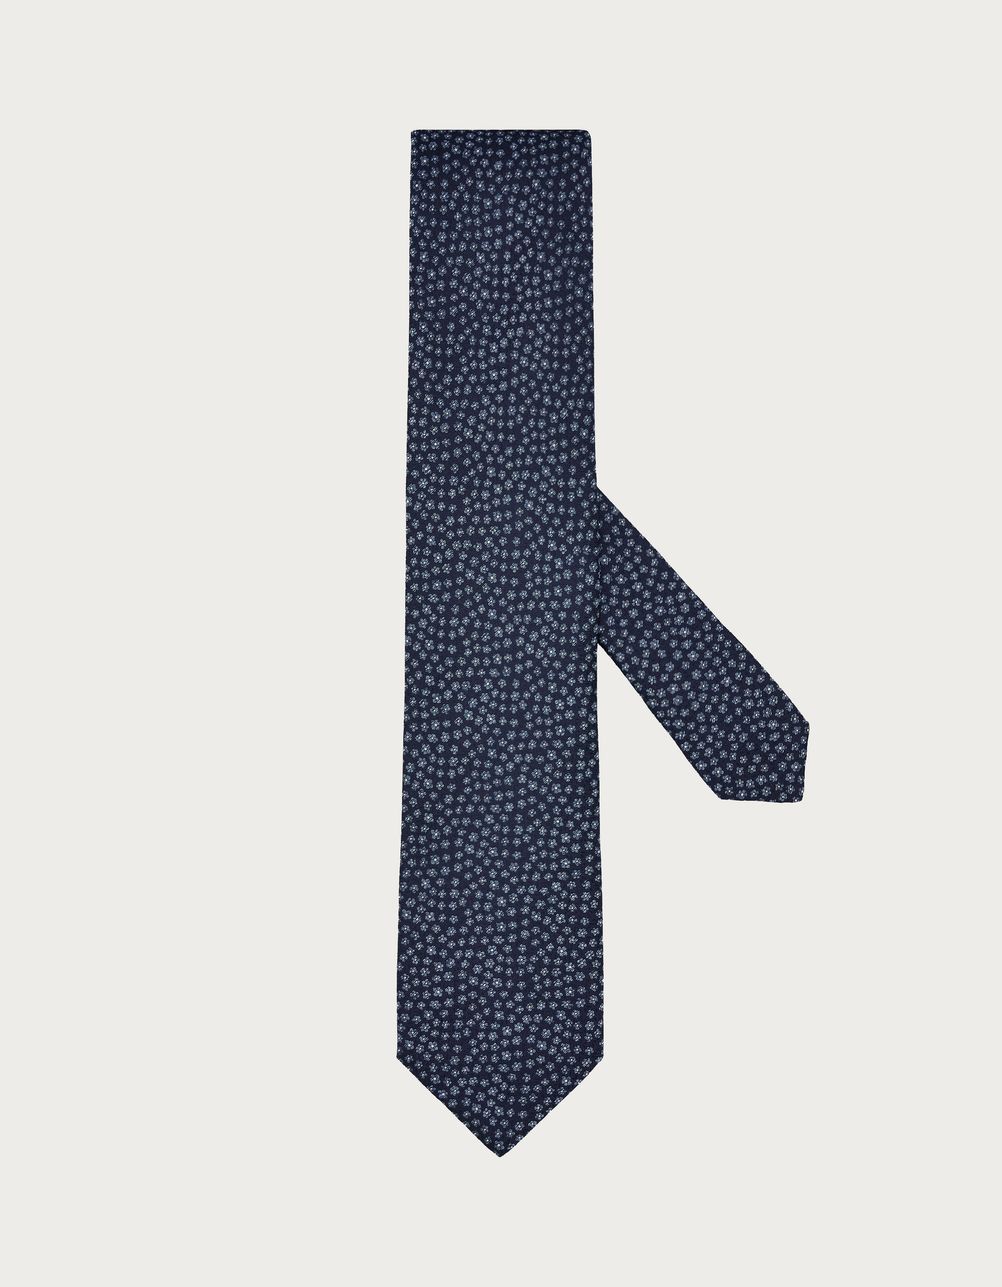 Corbata azul denim de seda estampada